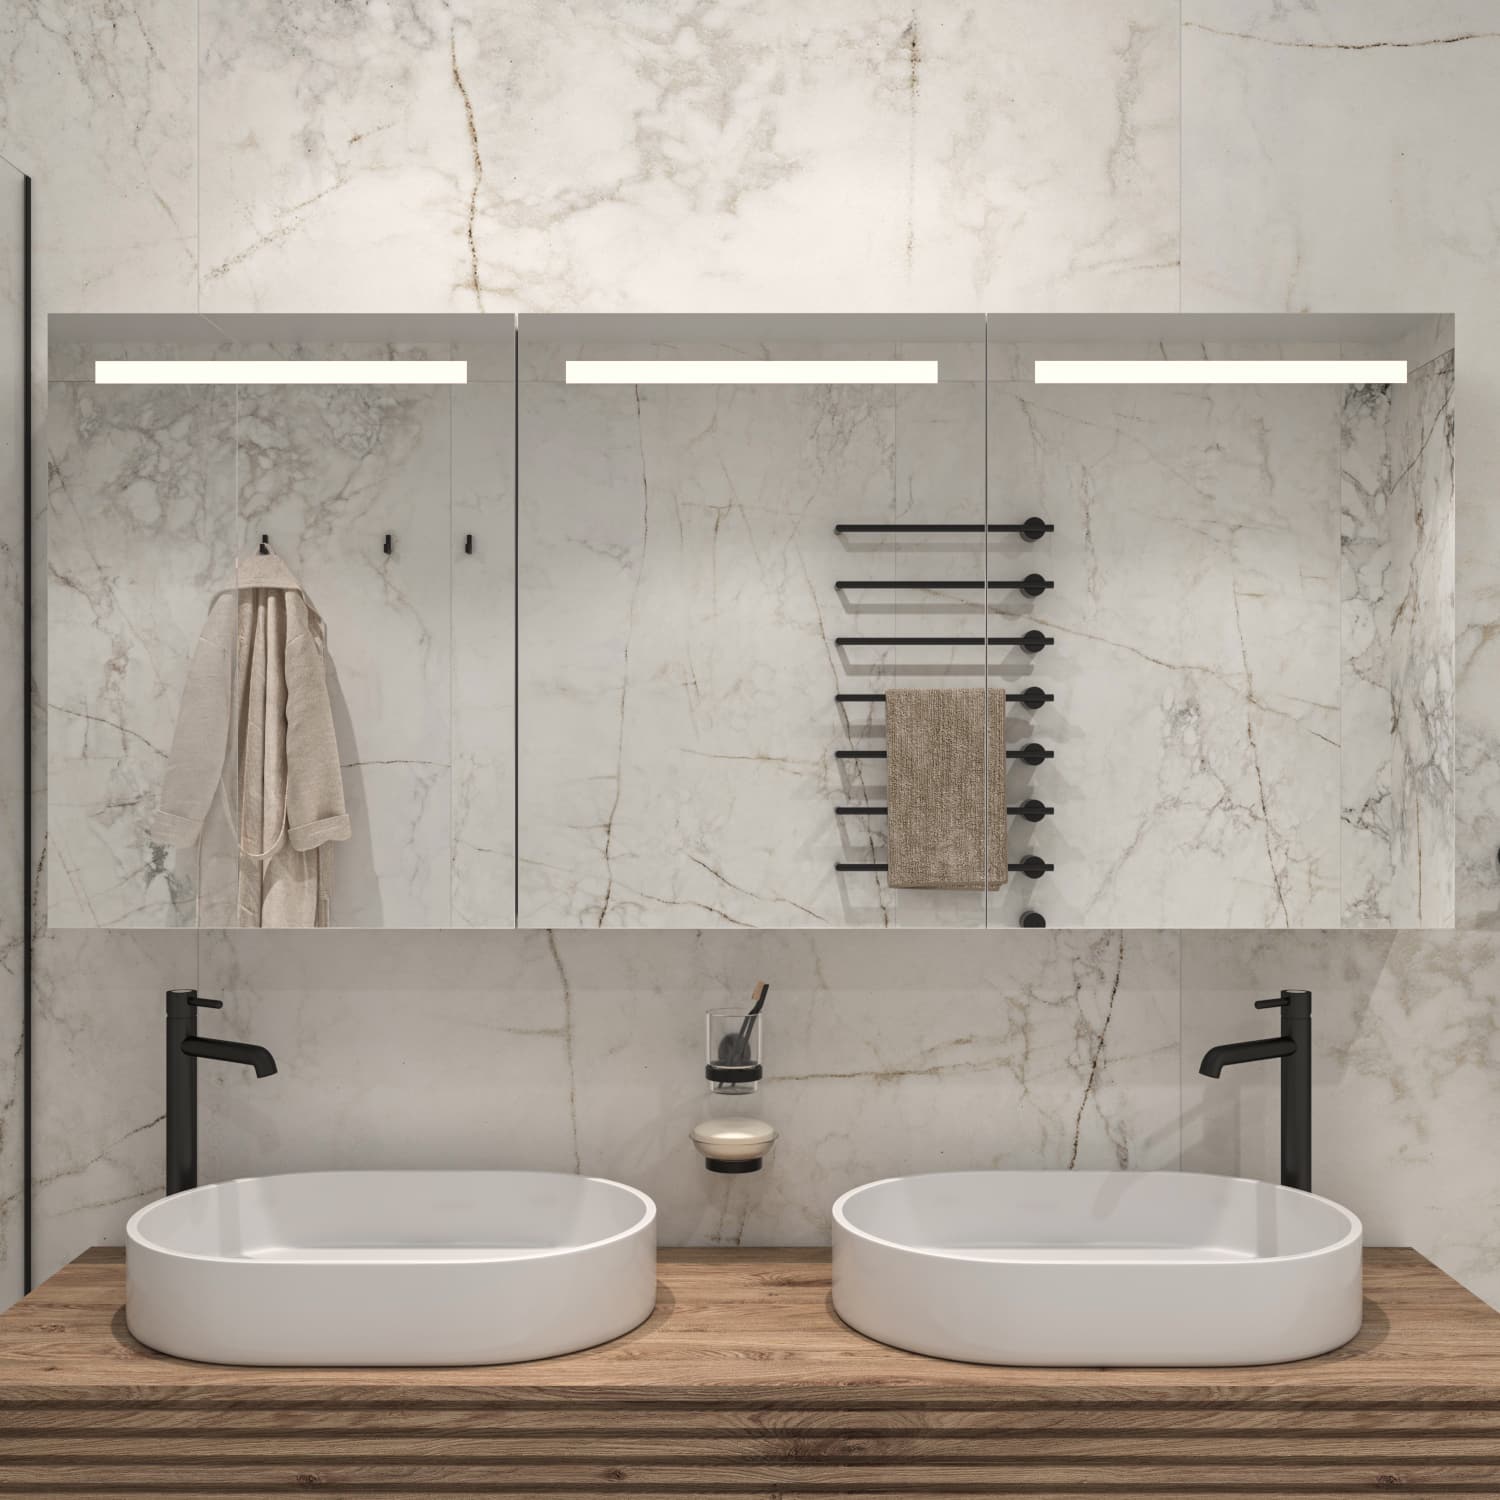 Stijlvolle 160 cm brede spiegelkast voor in de badkamer, uitgevoerd met geïntegreerde verlichting en verwarming